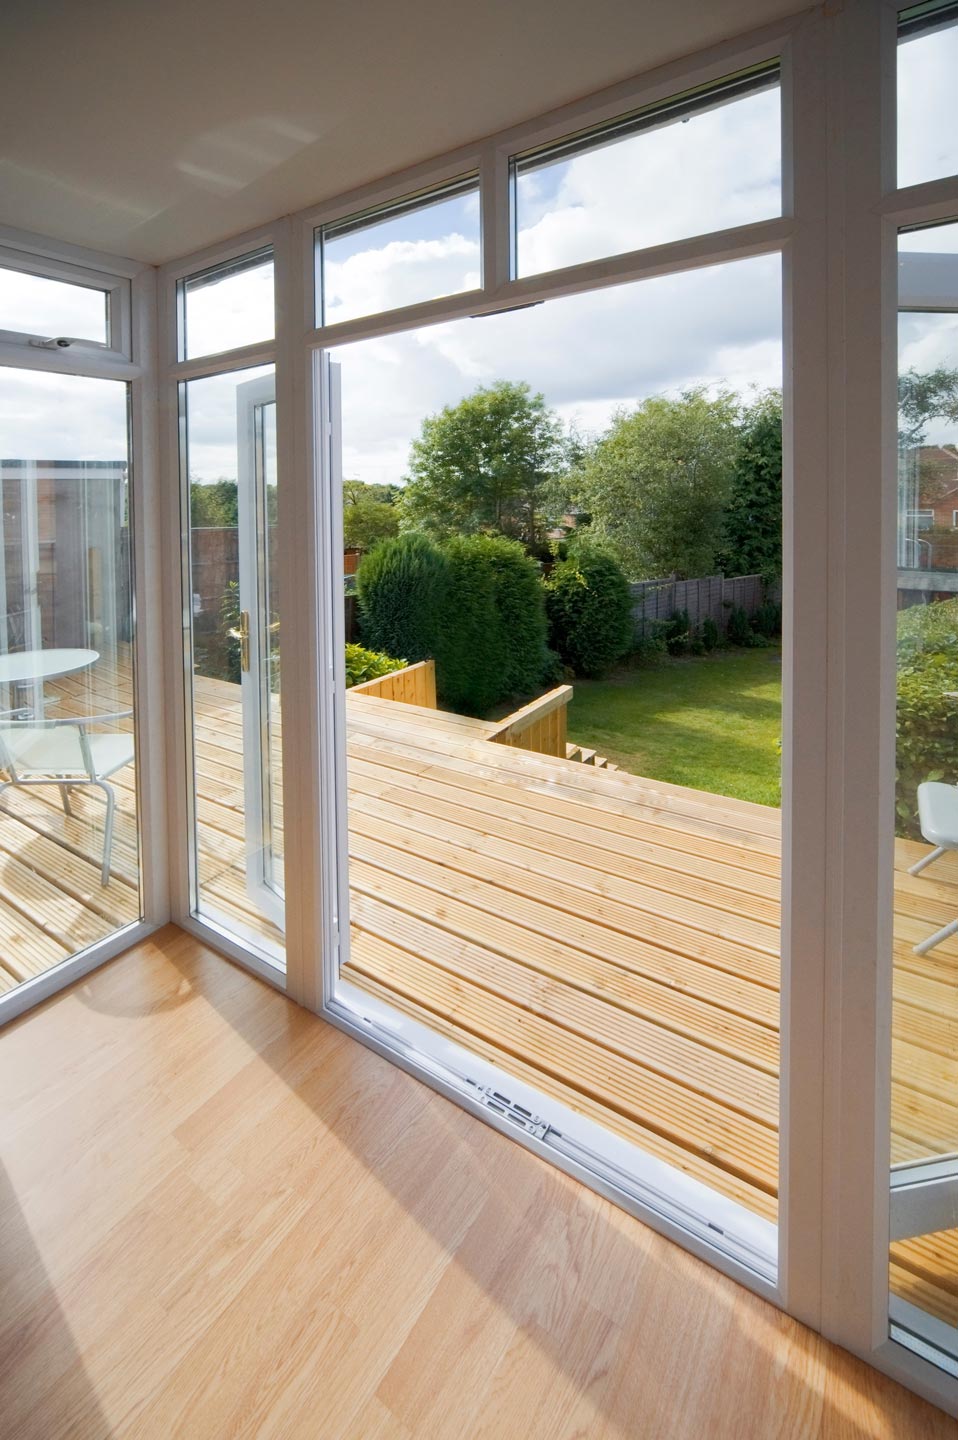 Terrasse en bois clair derrière une baie vitrée